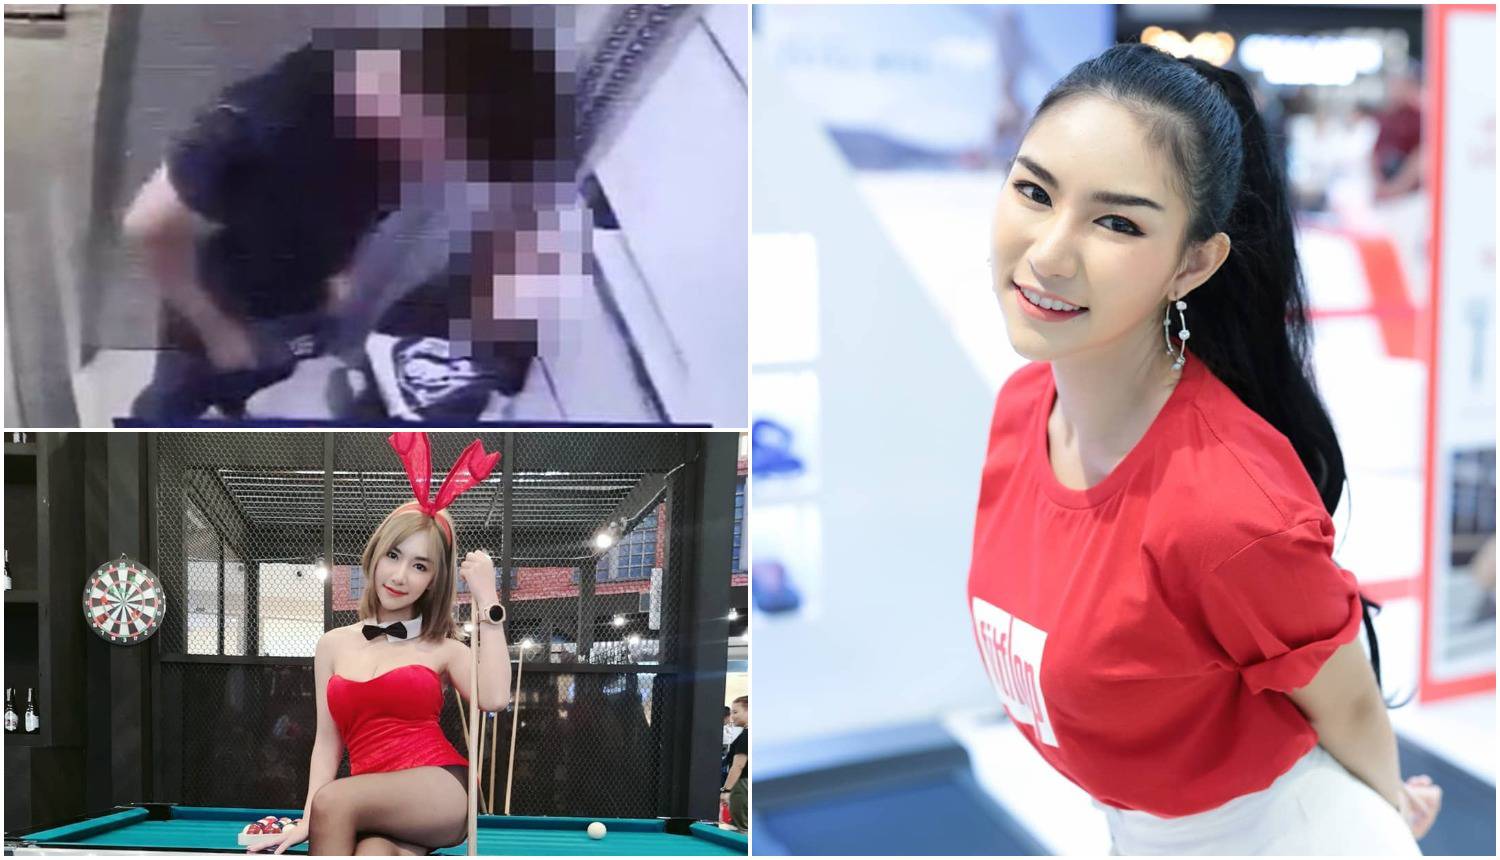 Misteriozna smrt u Bangkoku: Tijelo zečice našli su u liftu...